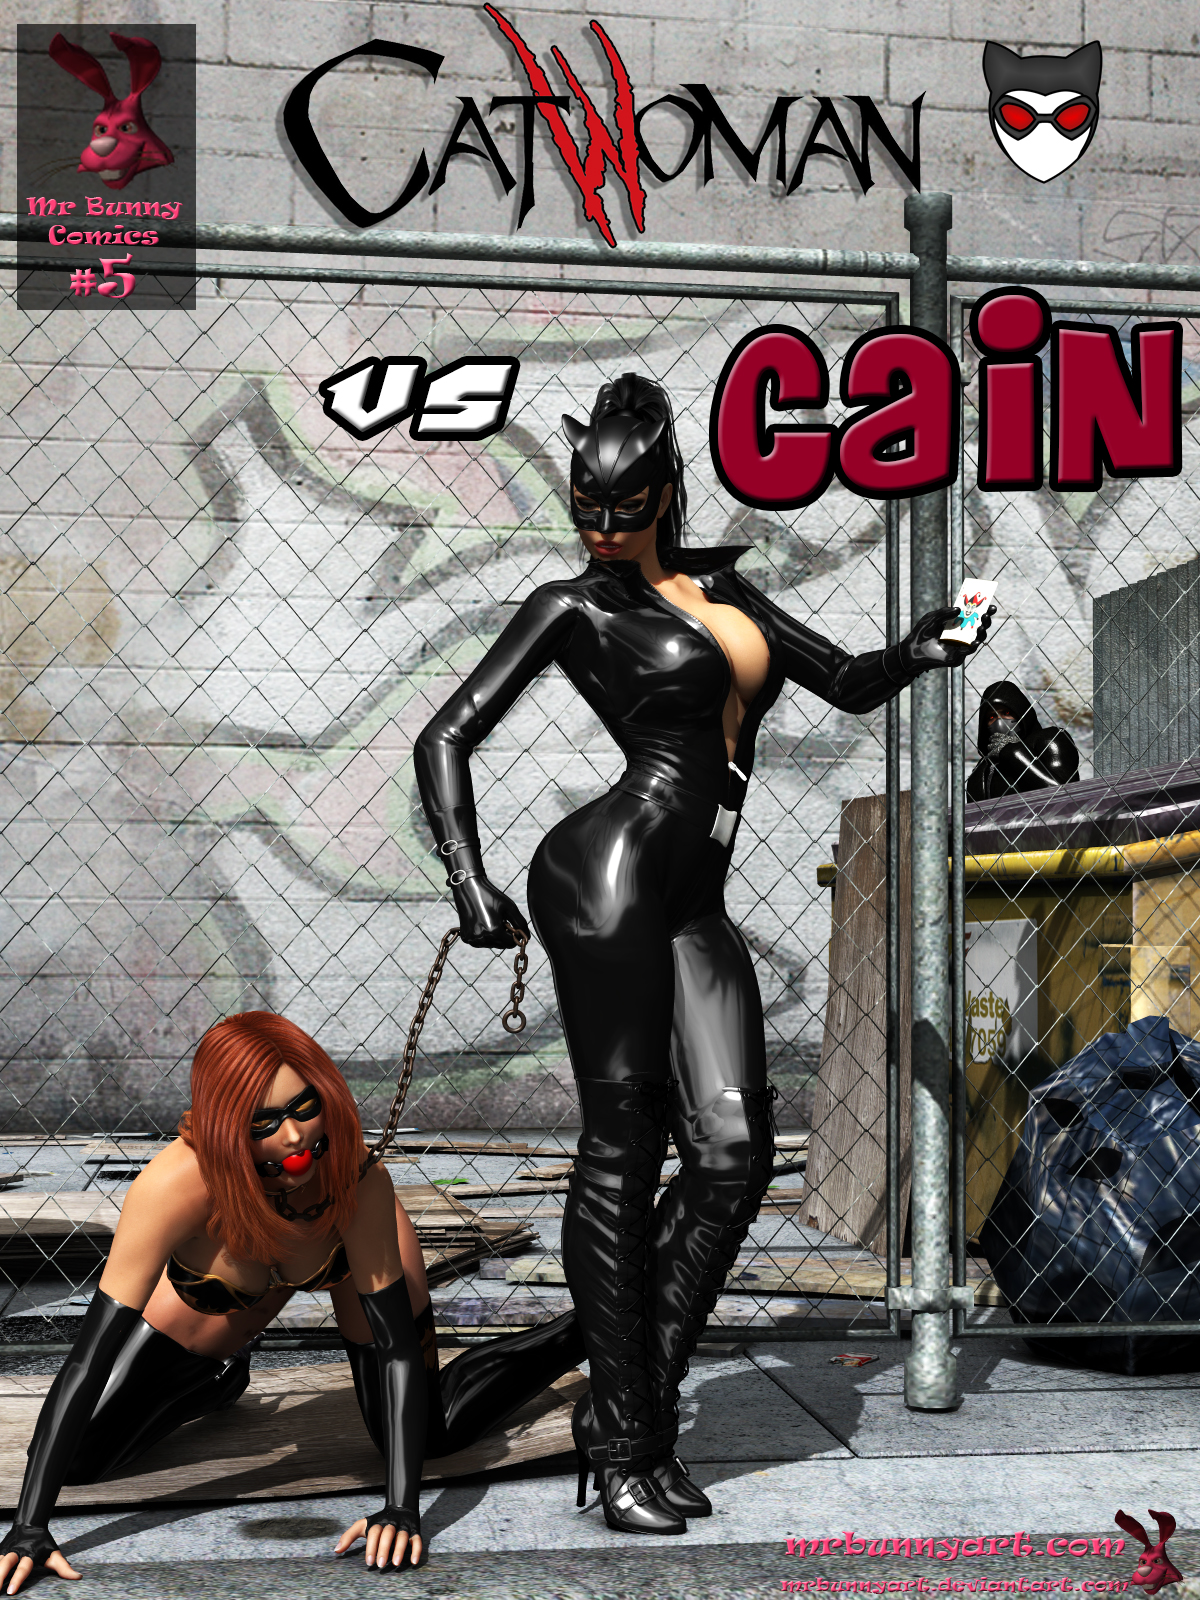 SureFap xxx porno Batman - [MrBunnyArt] - Comics #5 - Catwoman vs Cain